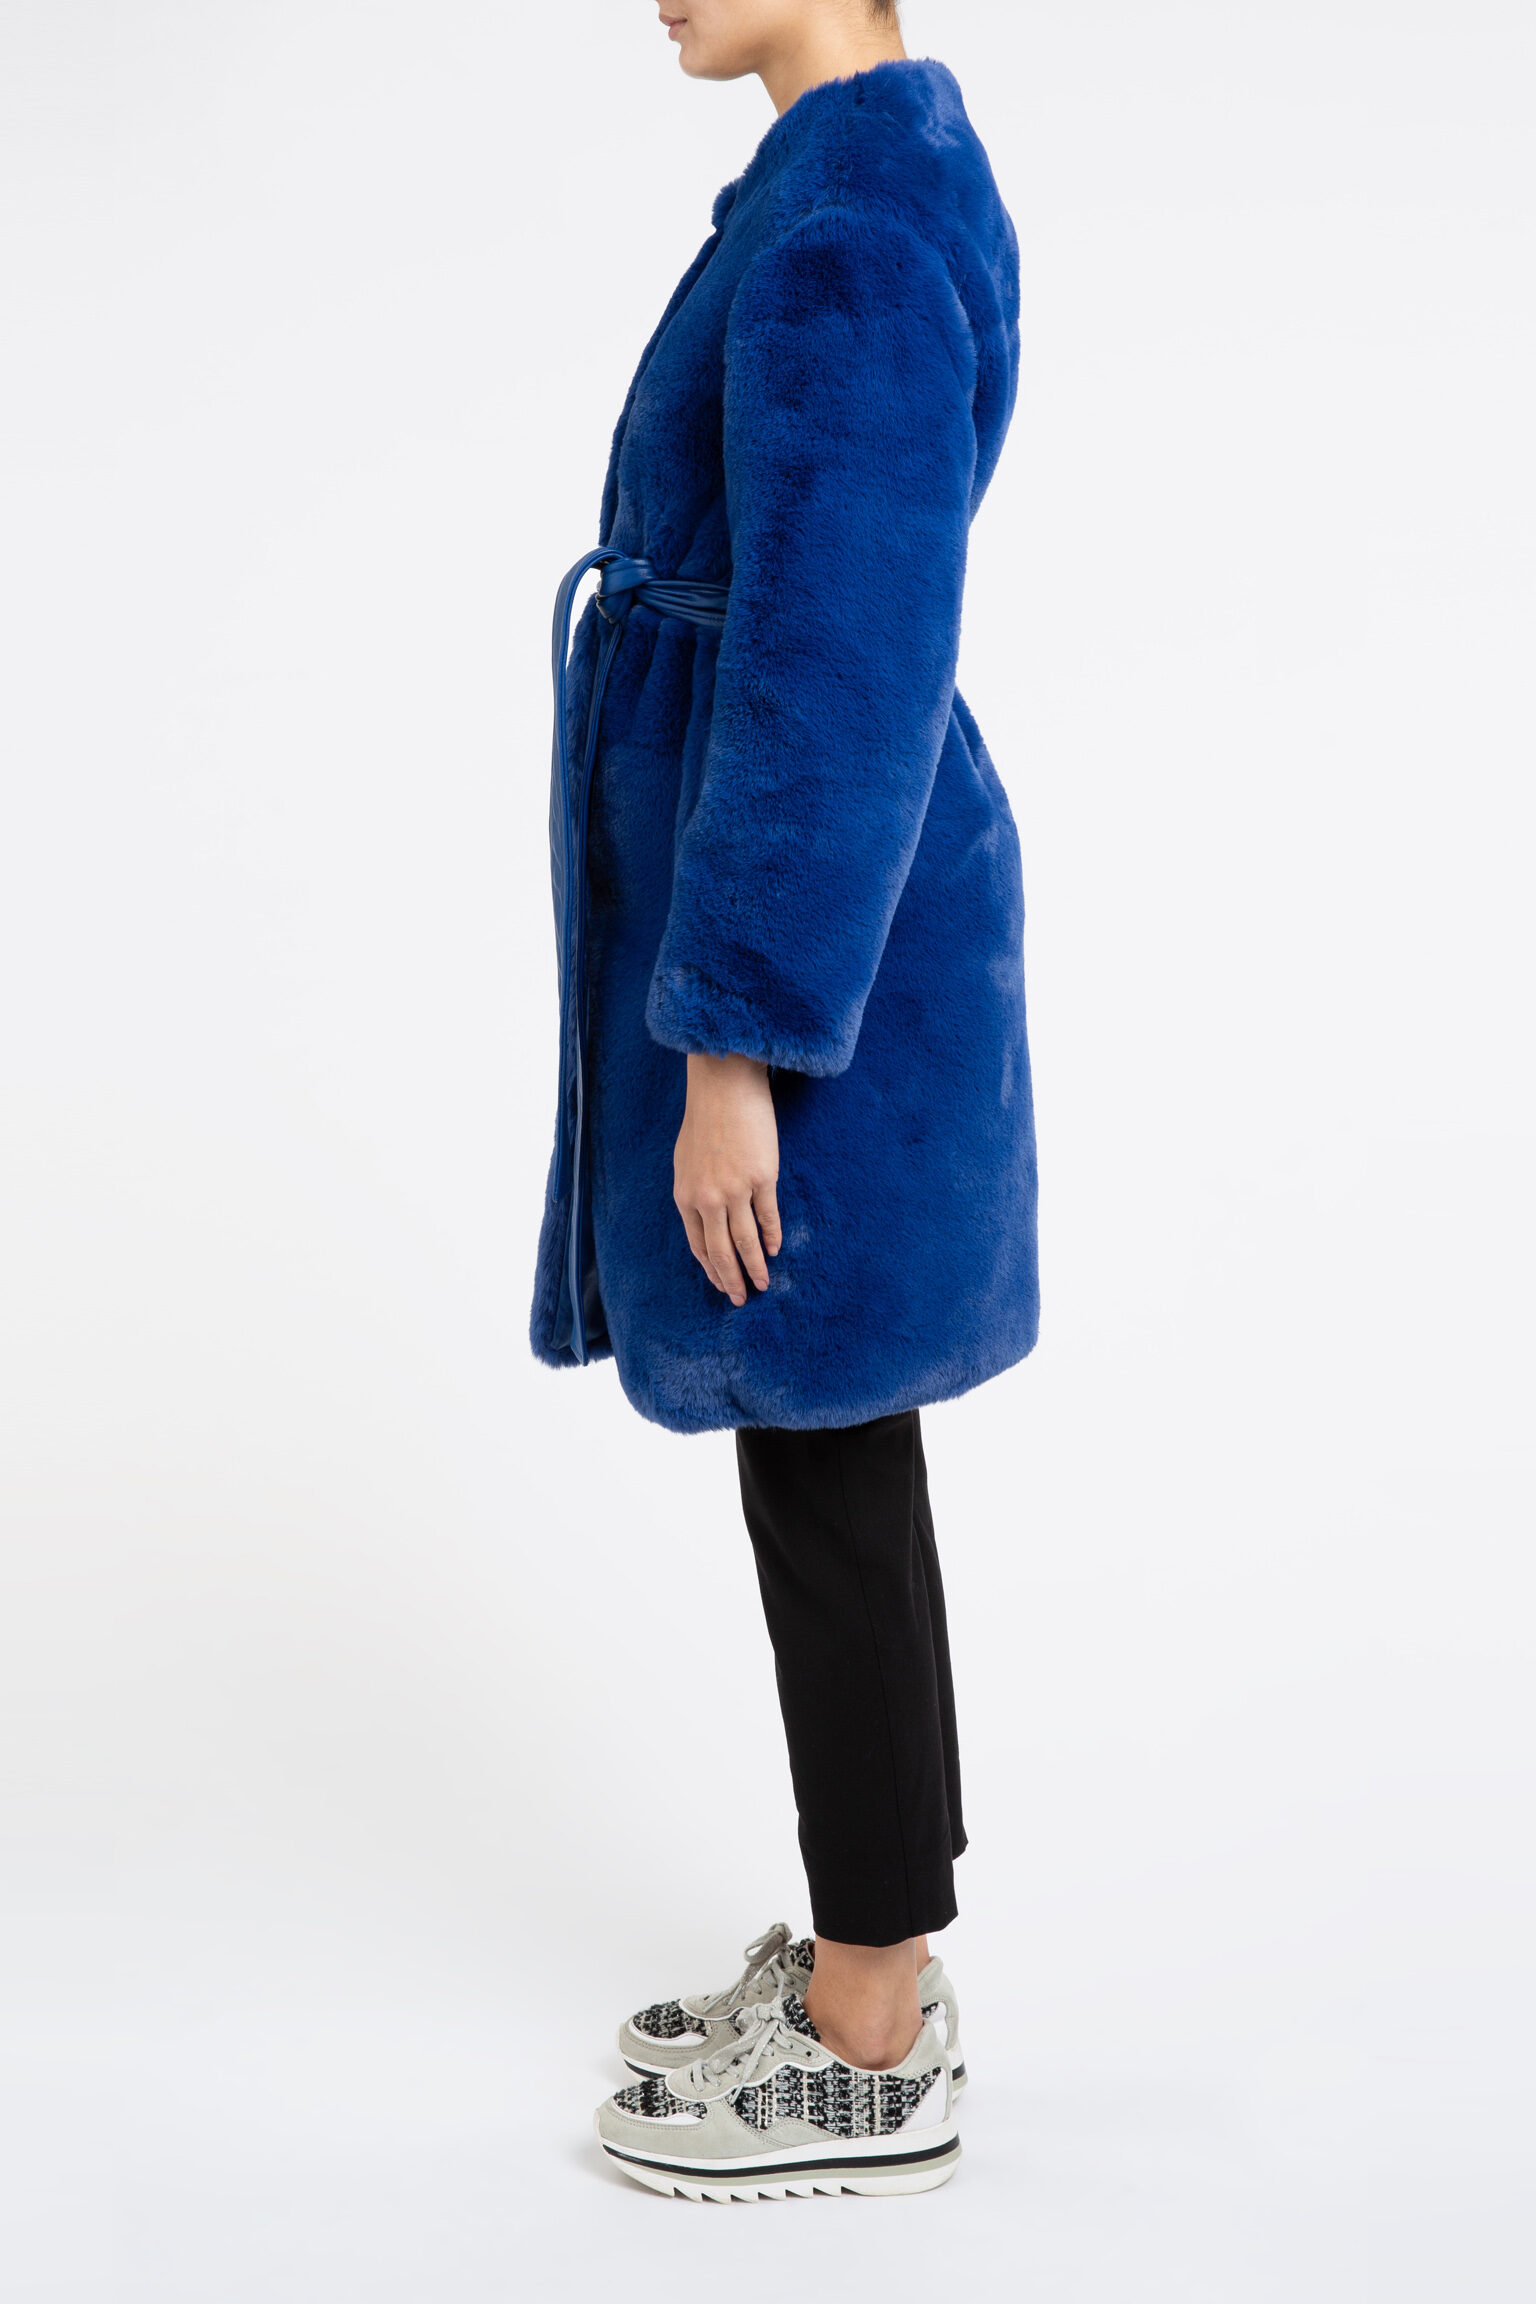 Serena Collarless Faux Fur Coat in Blue